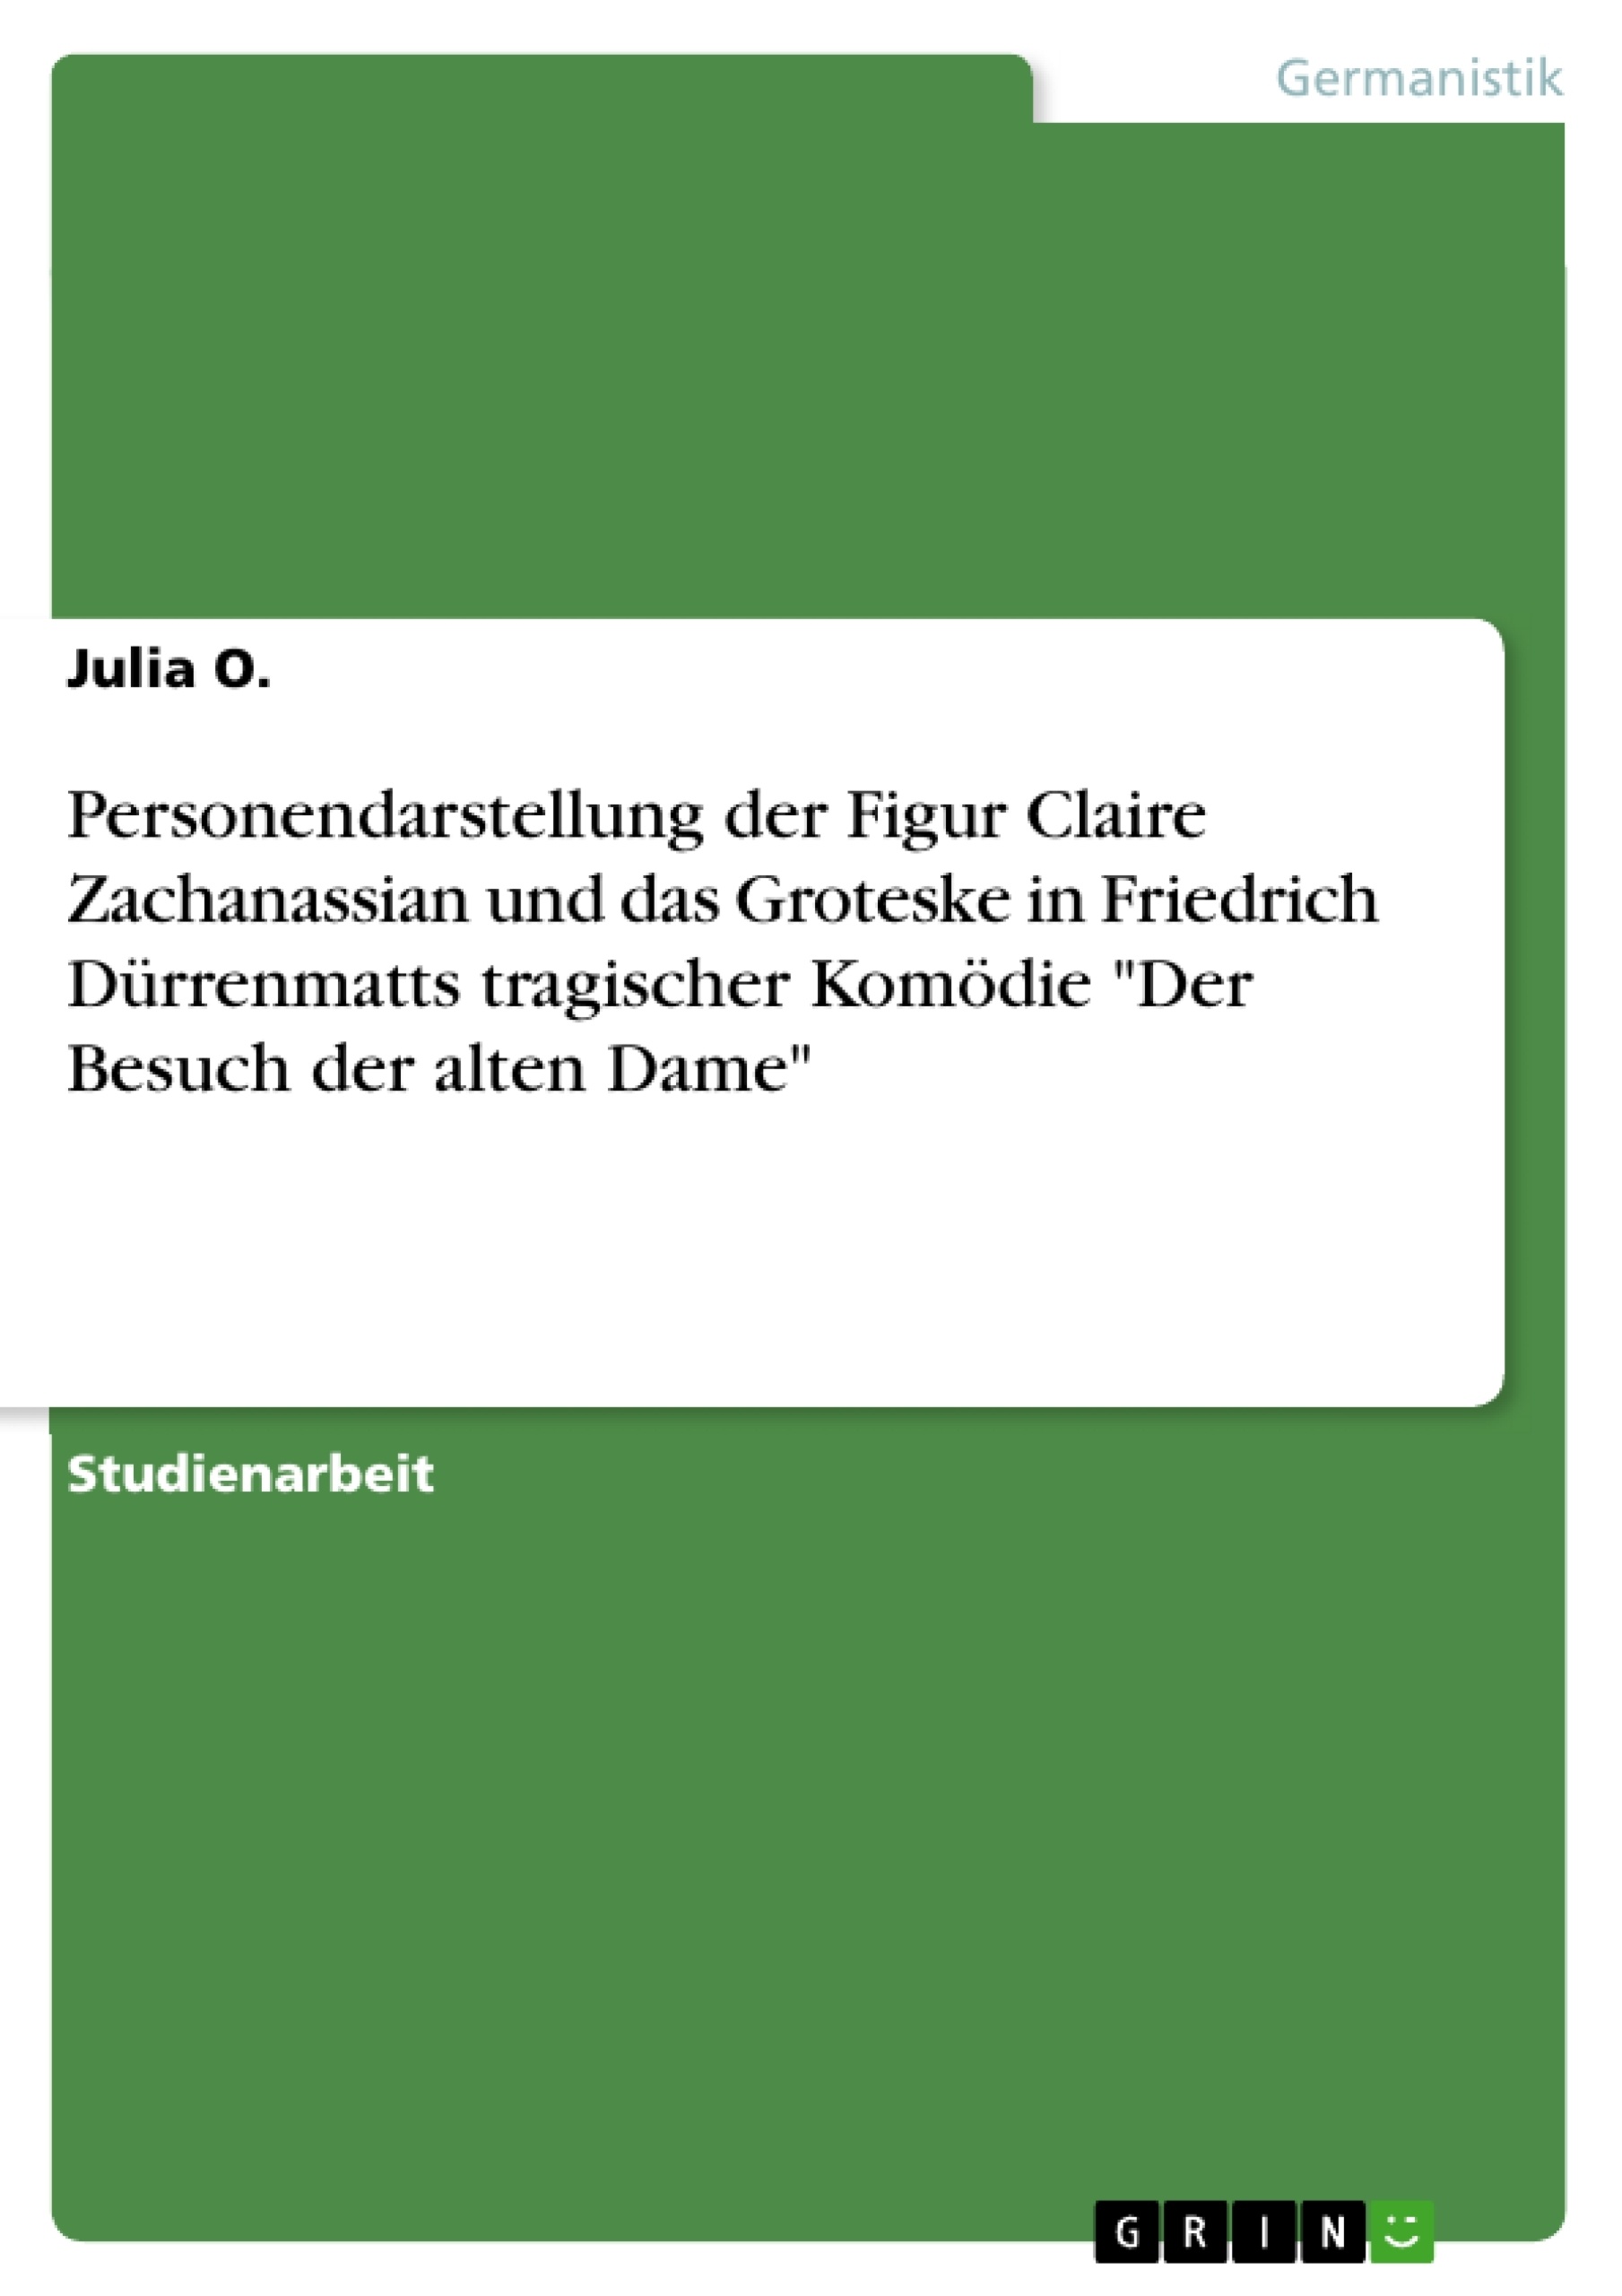 Title: Personendarstellung der Figur Claire Zachanassian und das Groteske in Friedrich Dürrenmatts tragischer Komödie "Der Besuch der alten Dame"